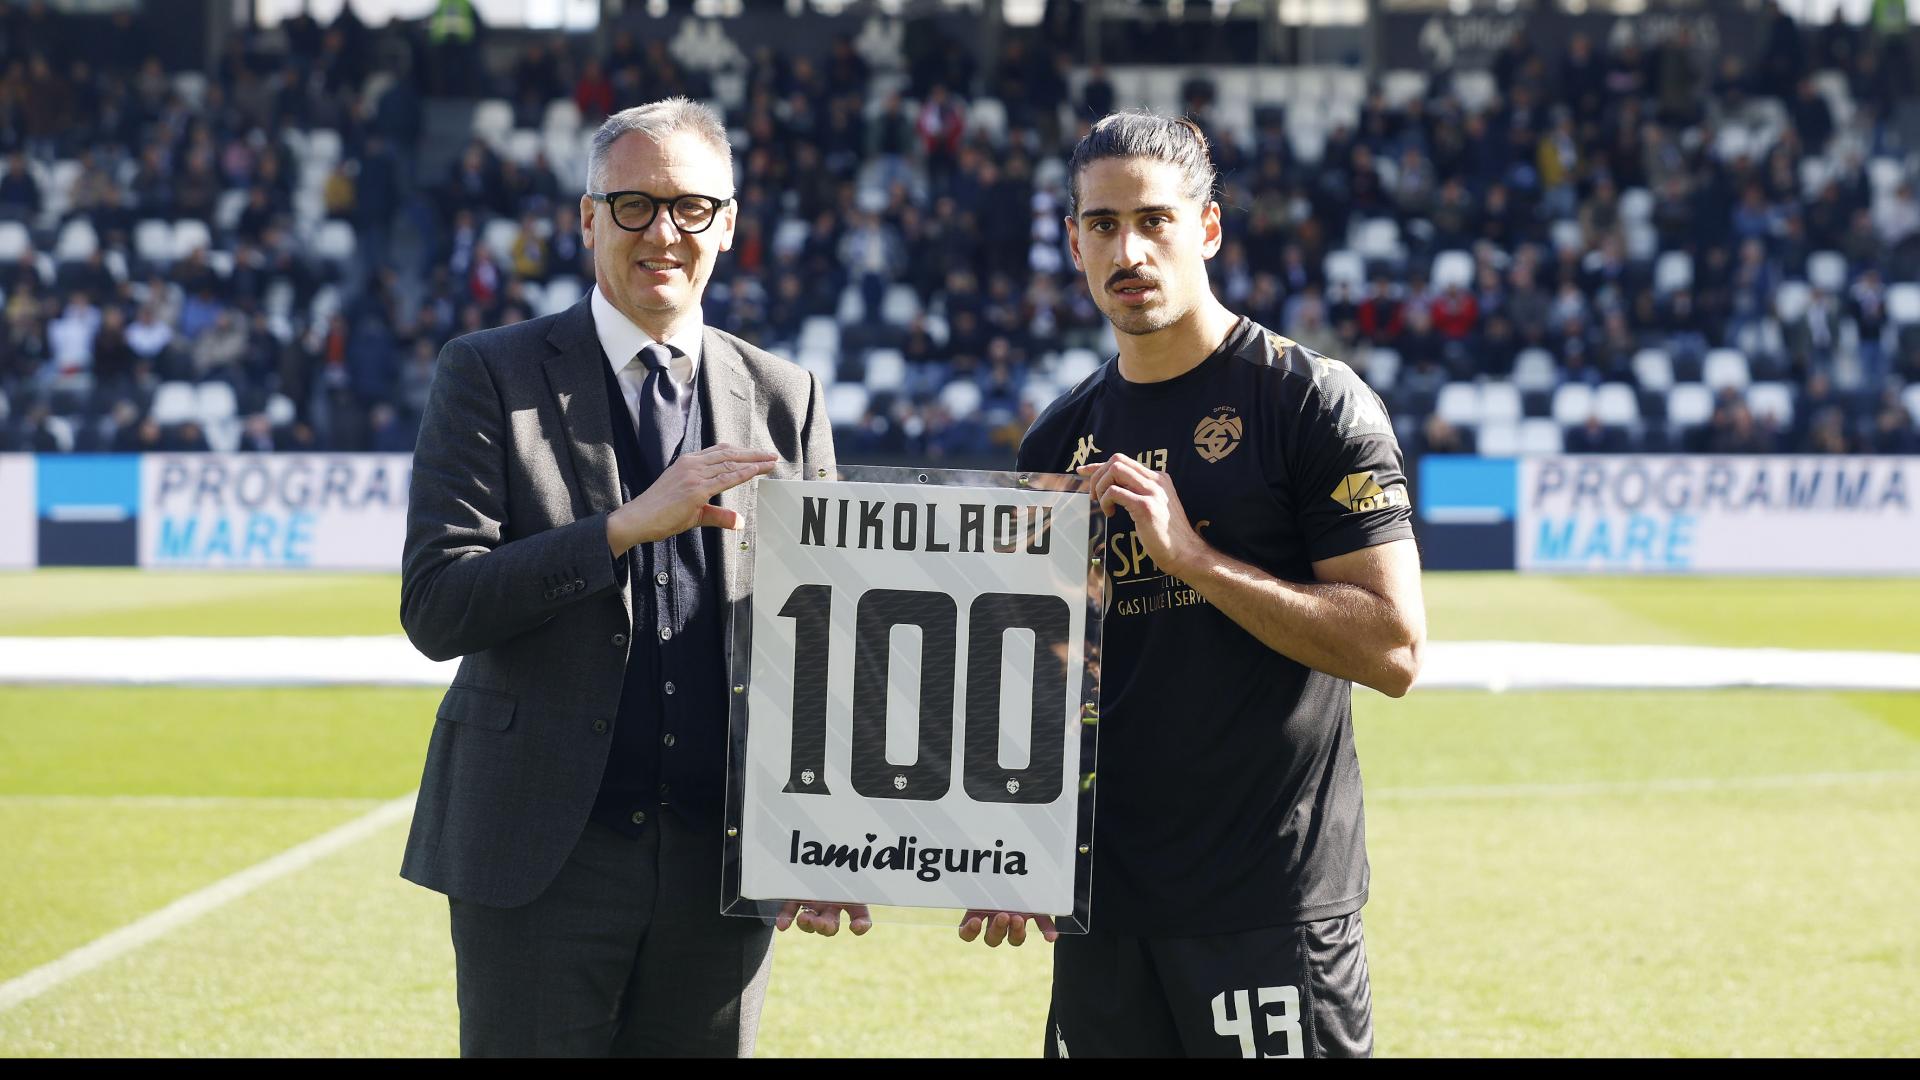 Nikolaou: "Onorato delle cento presenze con questa maglia"